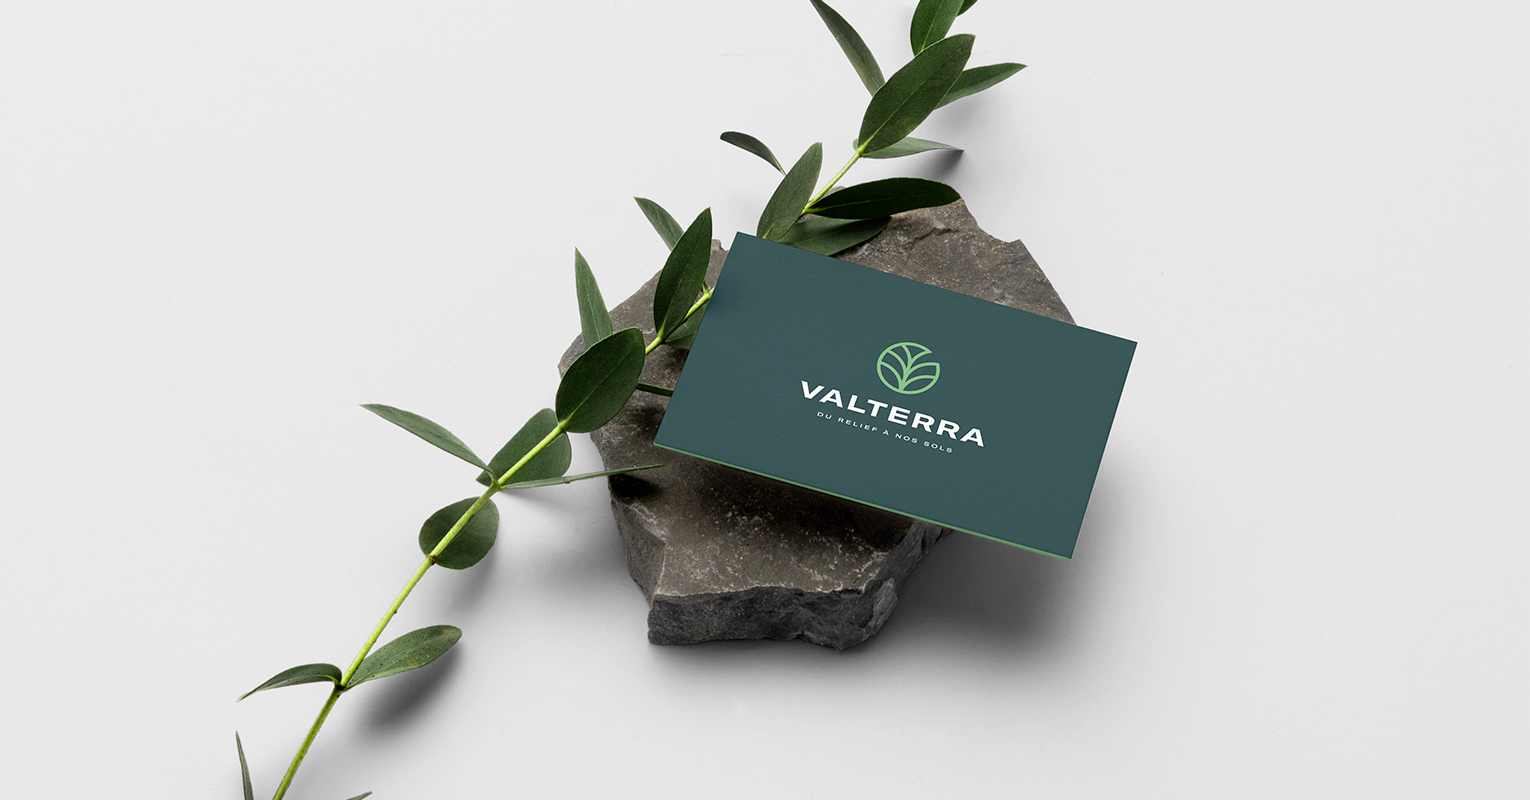 Les supports de communications réalisés pour Valterra